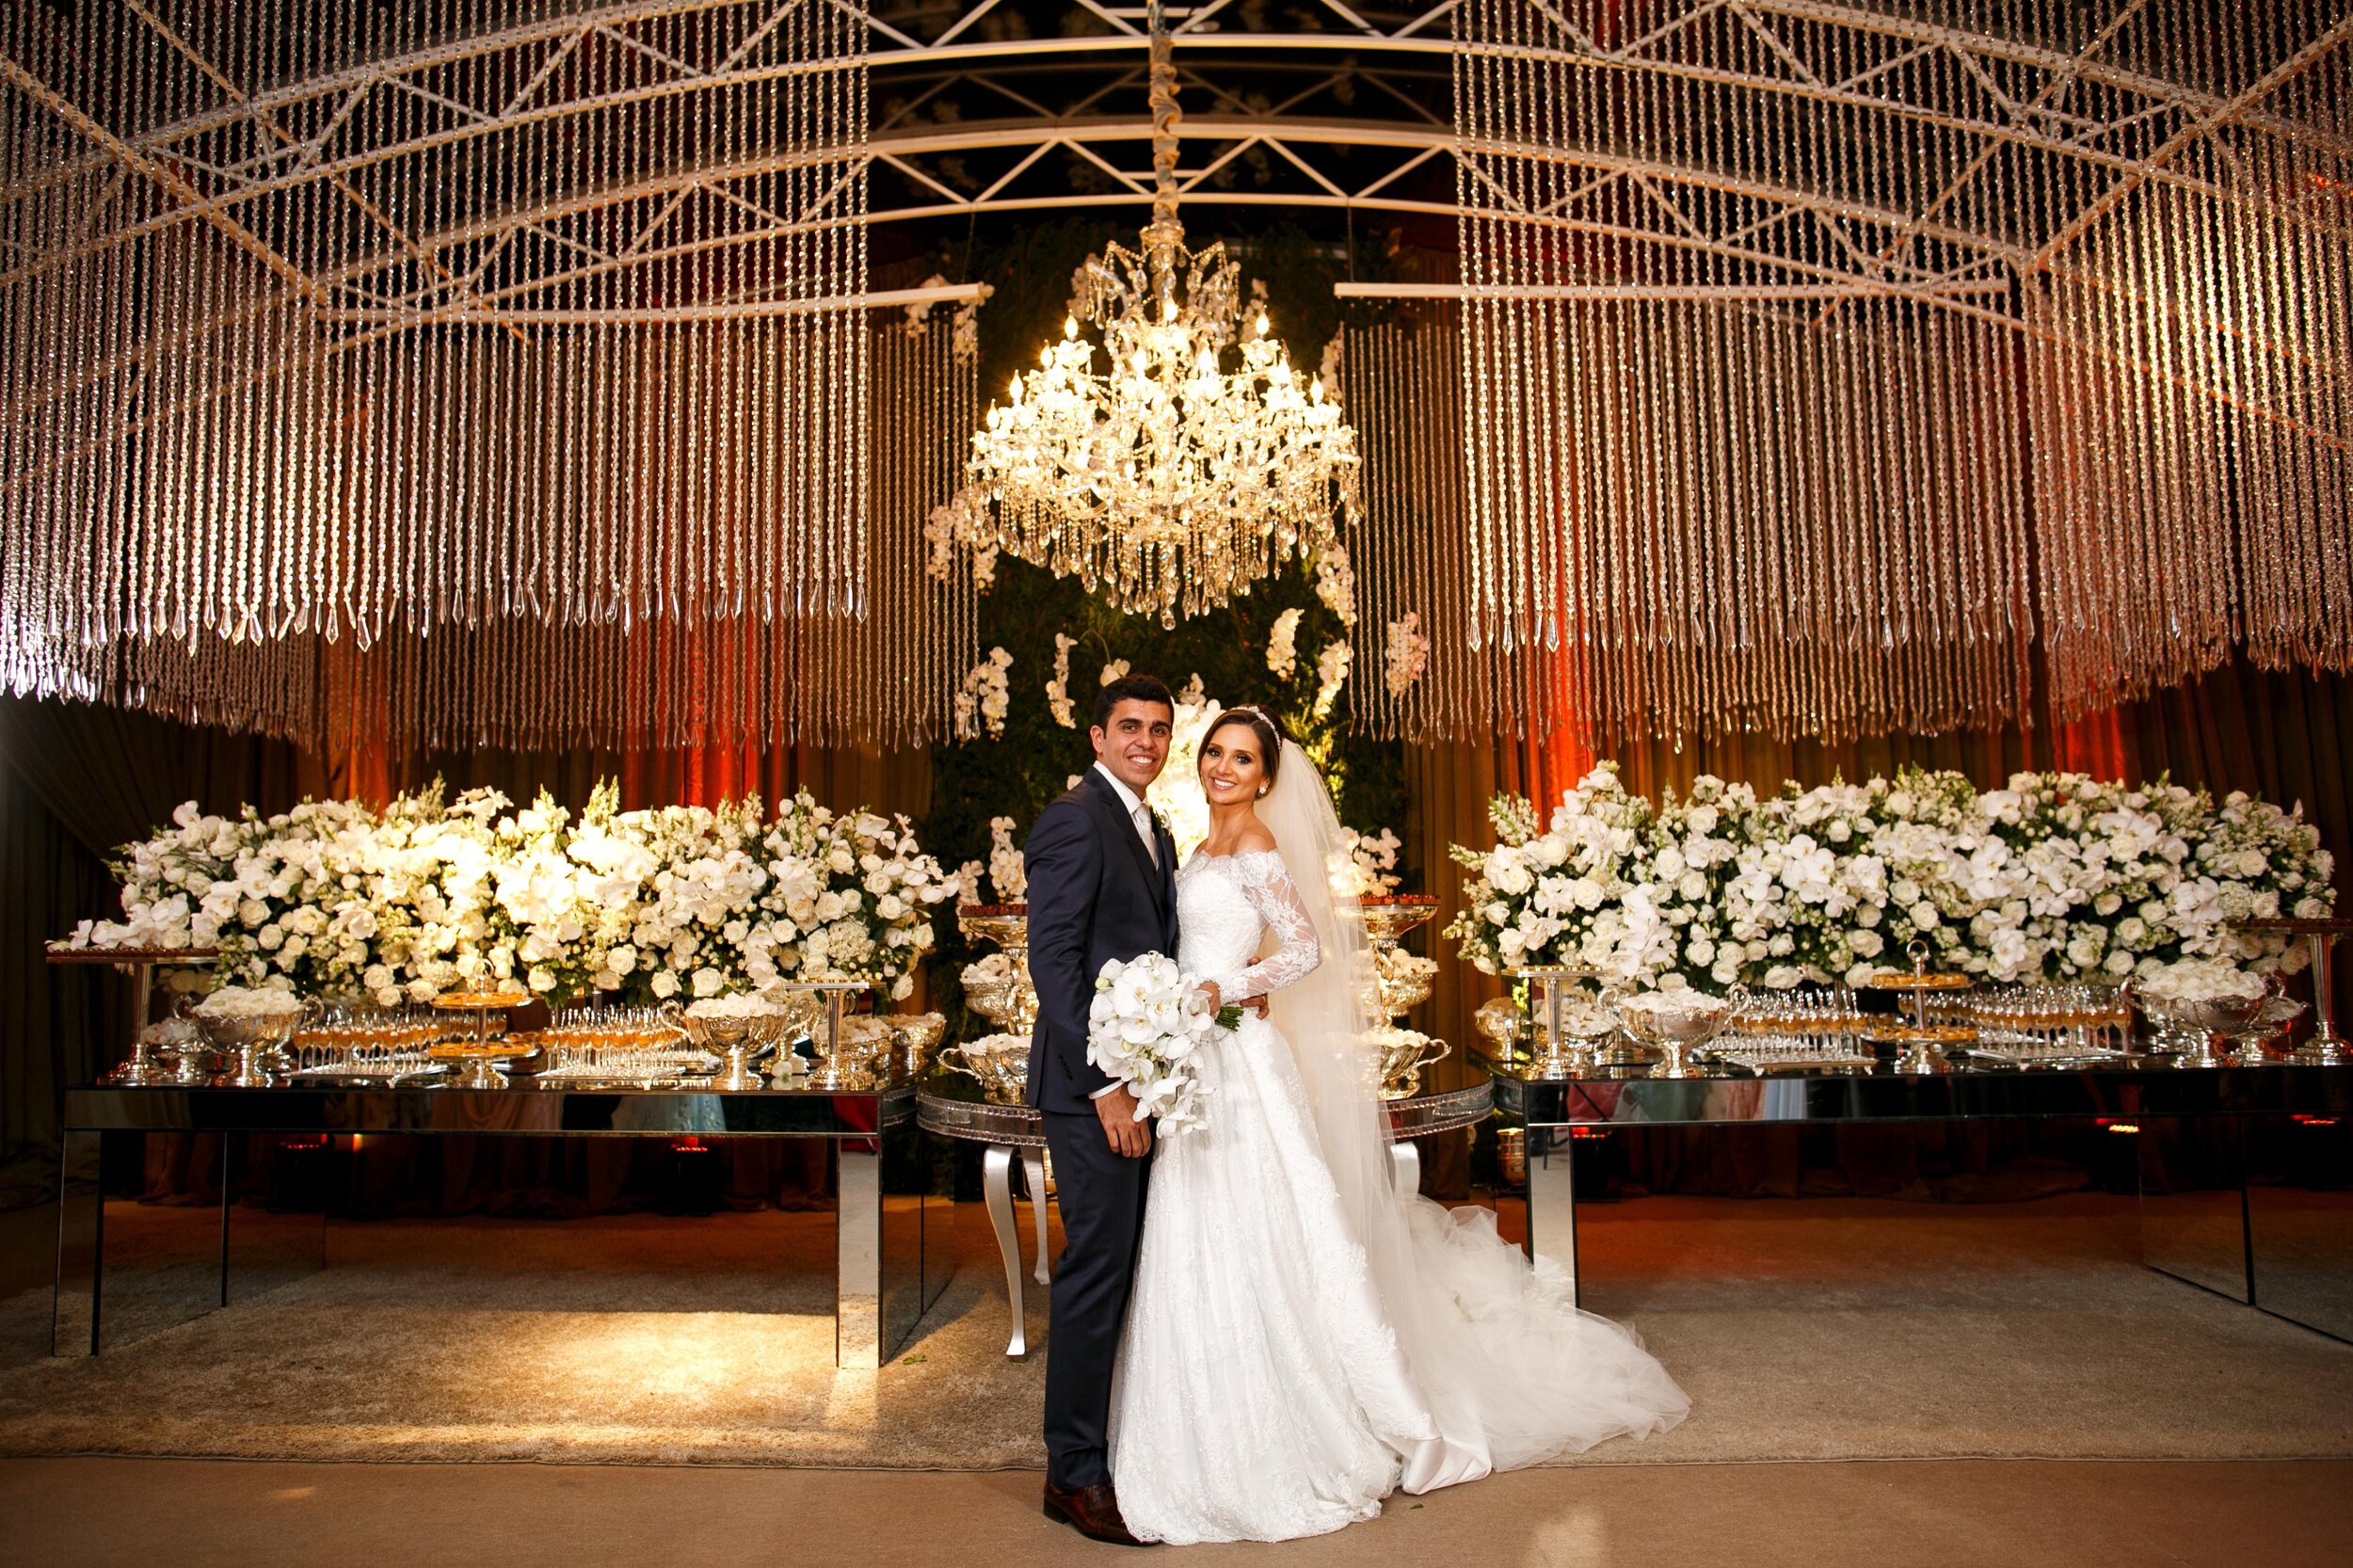 Cheng NV fotografo de casamento em Curitiba- Melhor fotografia do brasil - MIni casamento - Inspiração de decoração - 2020 - noiva - inesquecivel casamento_.97.jpg